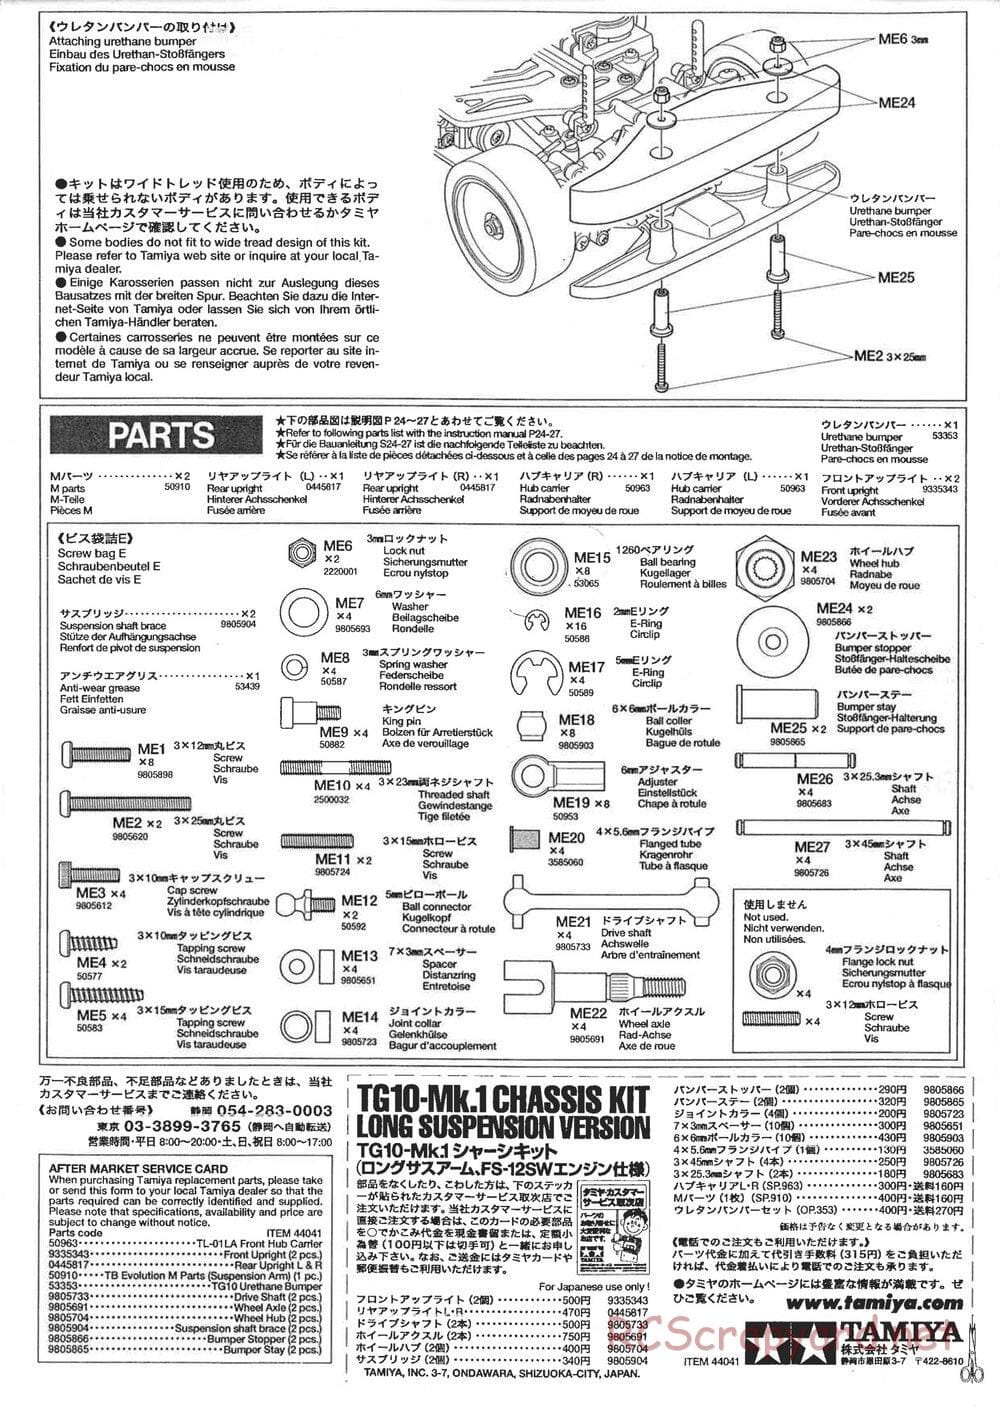 Tamiya - TG10 Mk.1 Long Suspension Chassis Chassis - Manual - Page 4